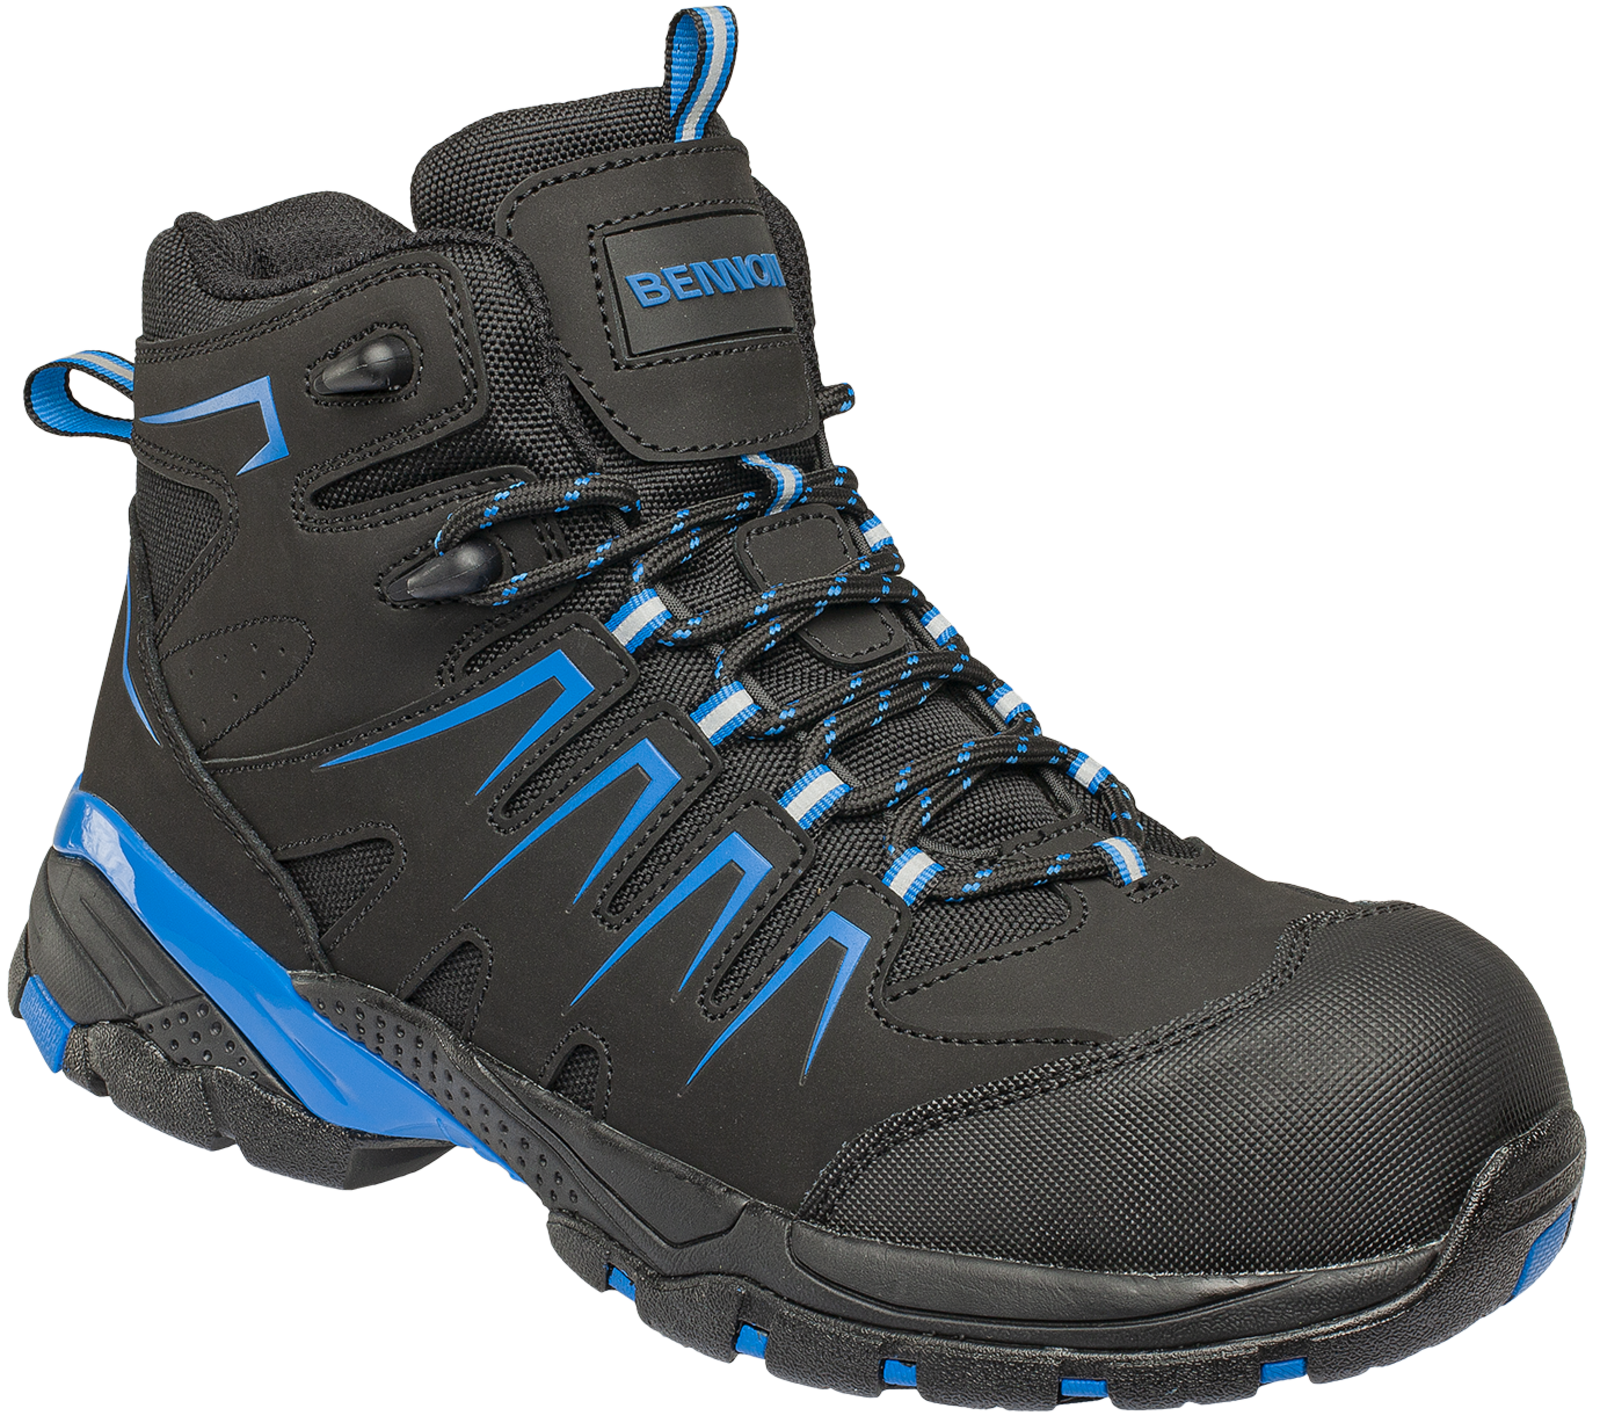 Bezpečnostná členková obuv Bennon Orlando XTR S3 NM High - veľkosť: 48, farba: čierna/modrá